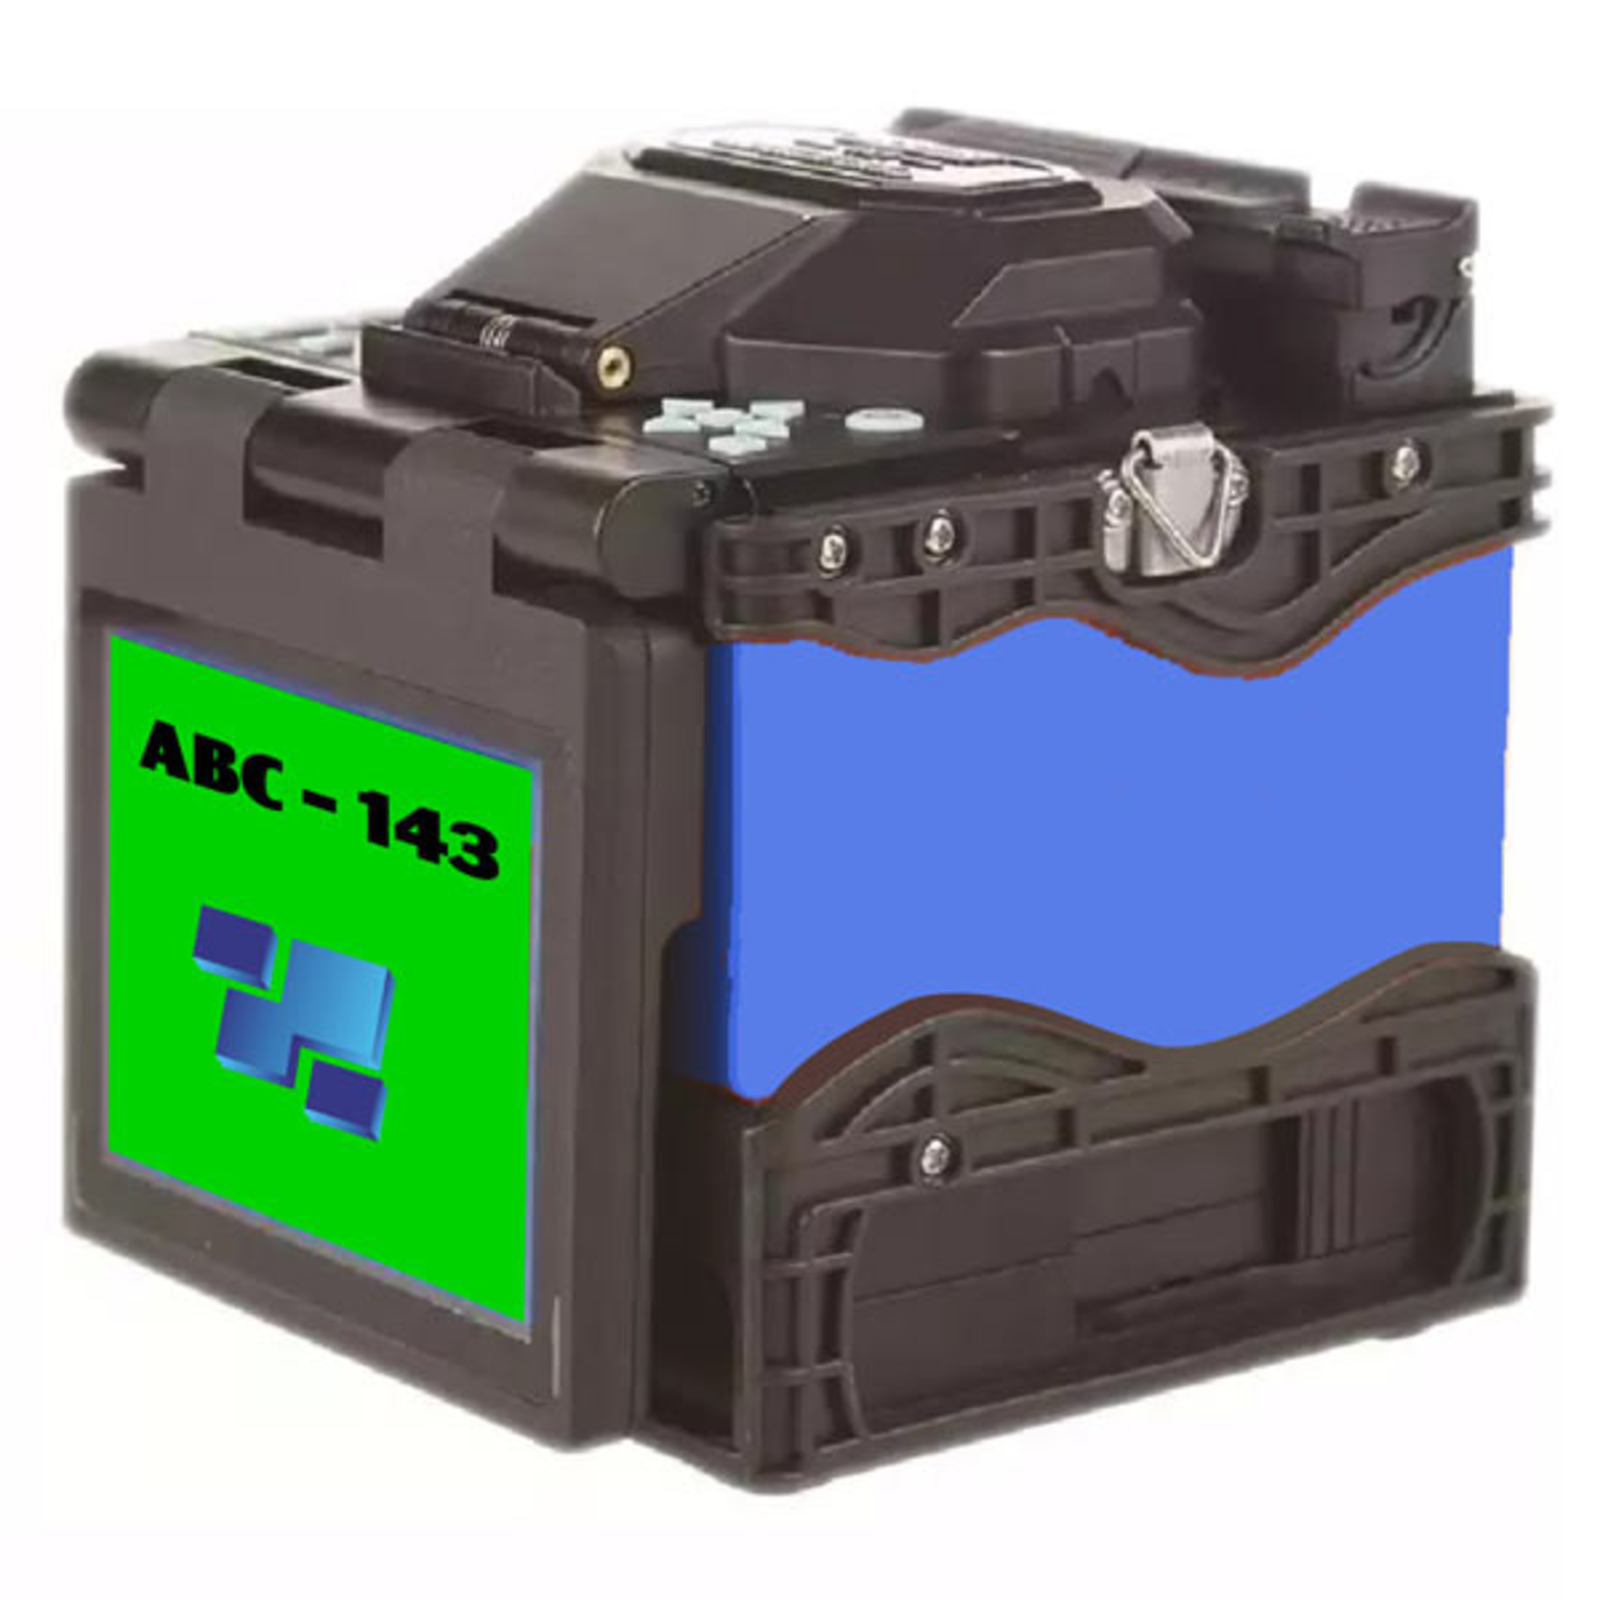 Автоматический сварочный аппарат ABC 143 (в полной комплектации)